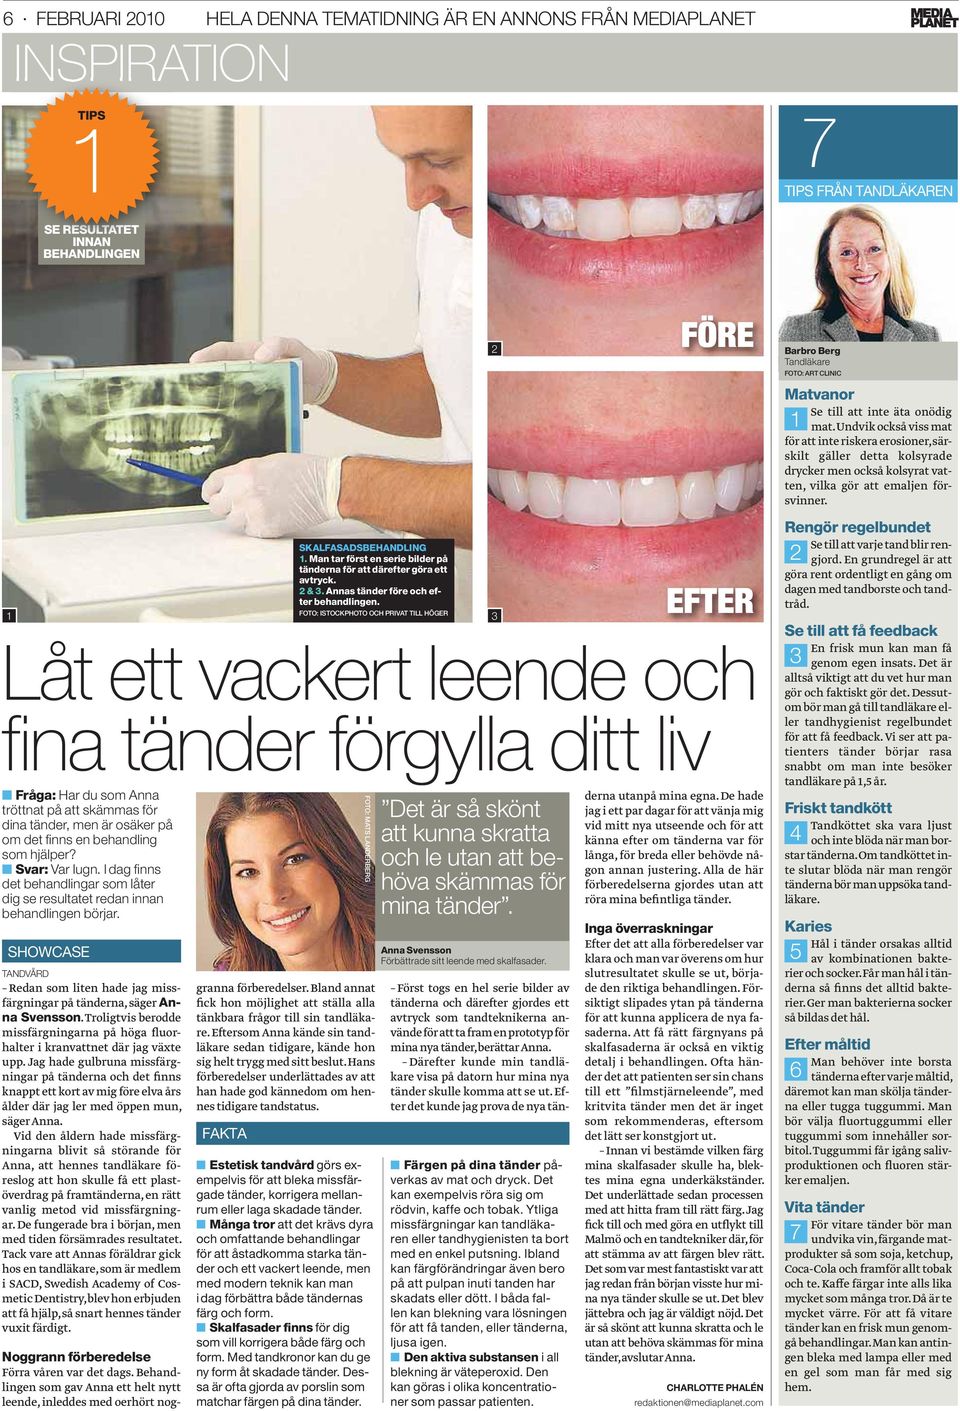 I dag fi nns det behandlingar som låter dig se resultatet redan innan behandlingen börjar. SHOWCASE TANDVÅRD Redan som liten hade jag missfärgningar på tänderna, säger Anna Svensson.